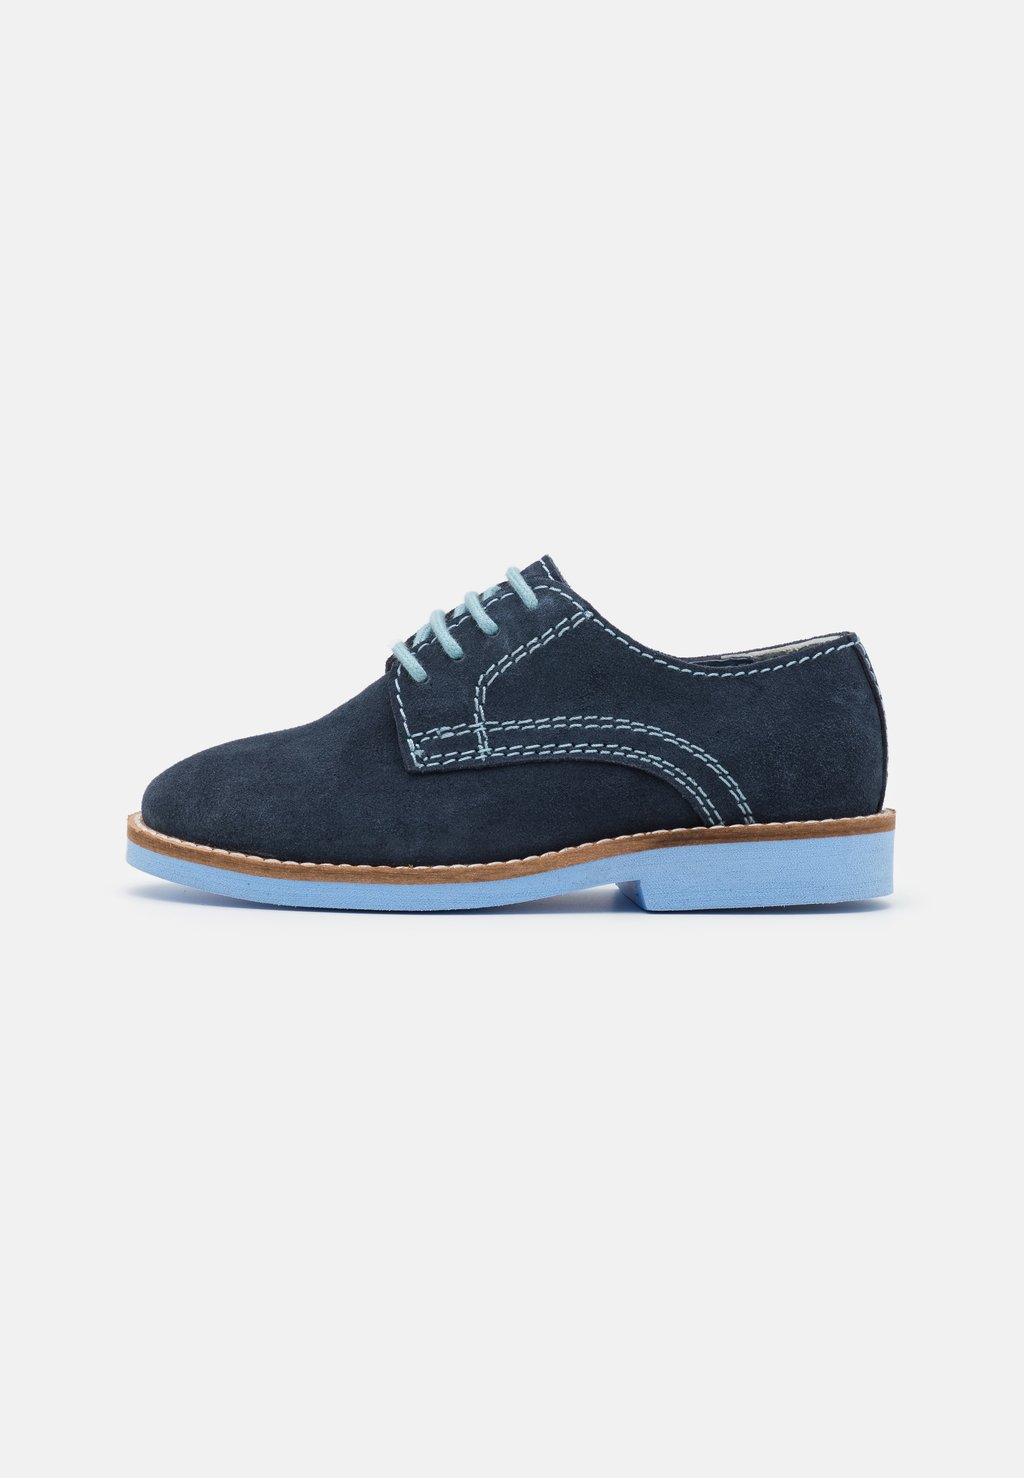 спортивные туфли на шнуровке derbies bugatti цвет dark blue dark blue Спортивные туфли на шнуровке LEATHER Friboo, цвет dark blue